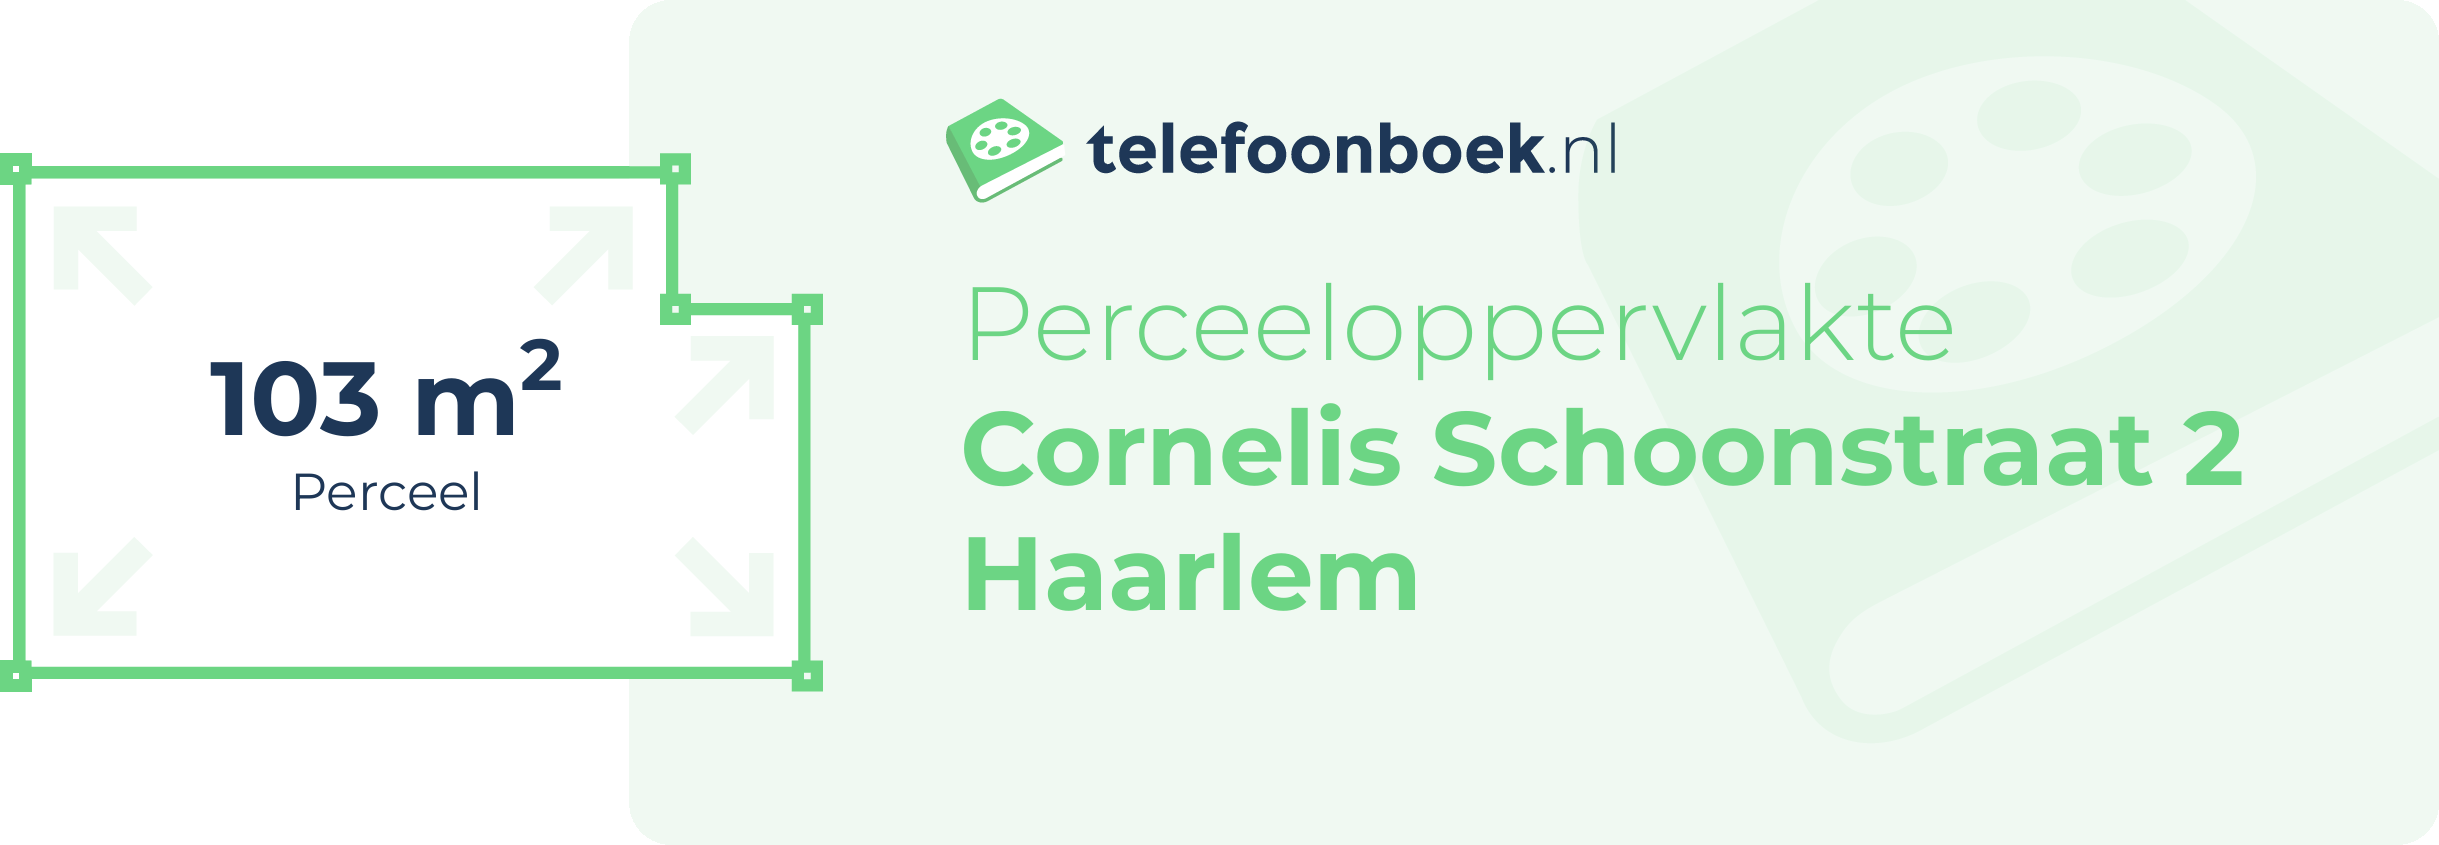 Perceeloppervlakte Cornelis Schoonstraat 2 Haarlem